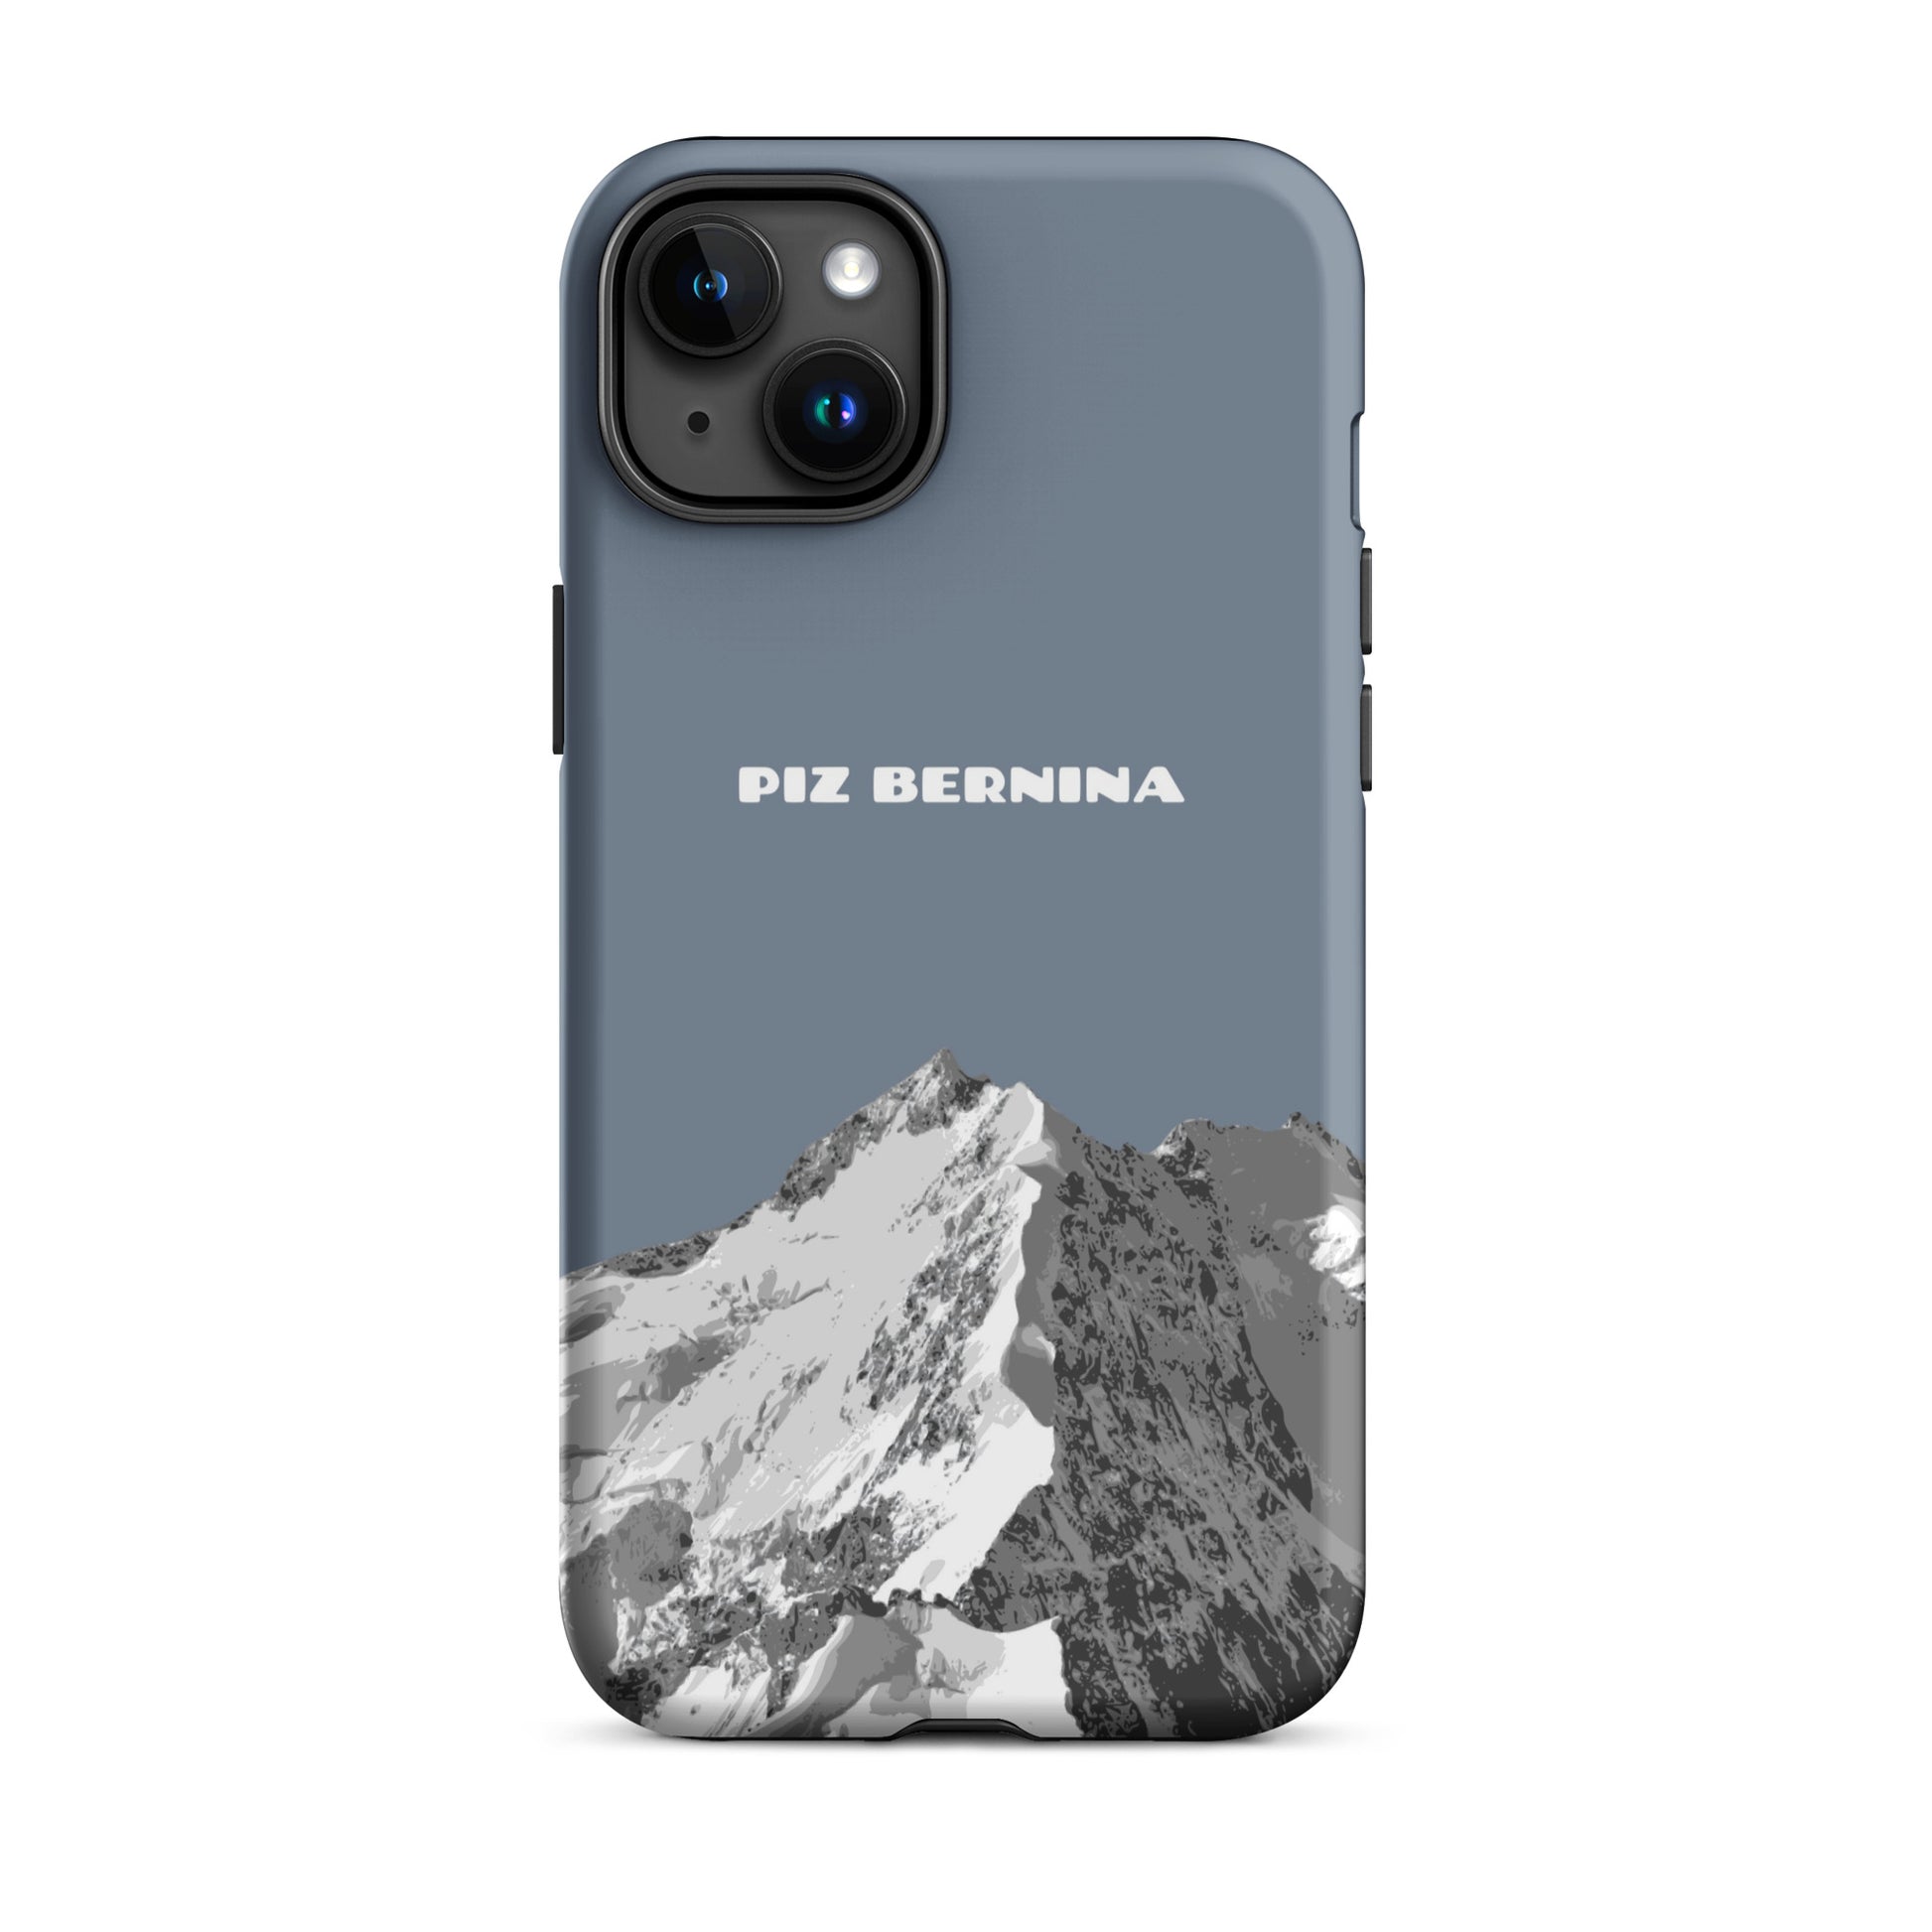 Hülle für das iPhone 15 Plus von Apple in der Farbe Schiefergrau, dass den Piz Bernina in Graubünden zeigt.